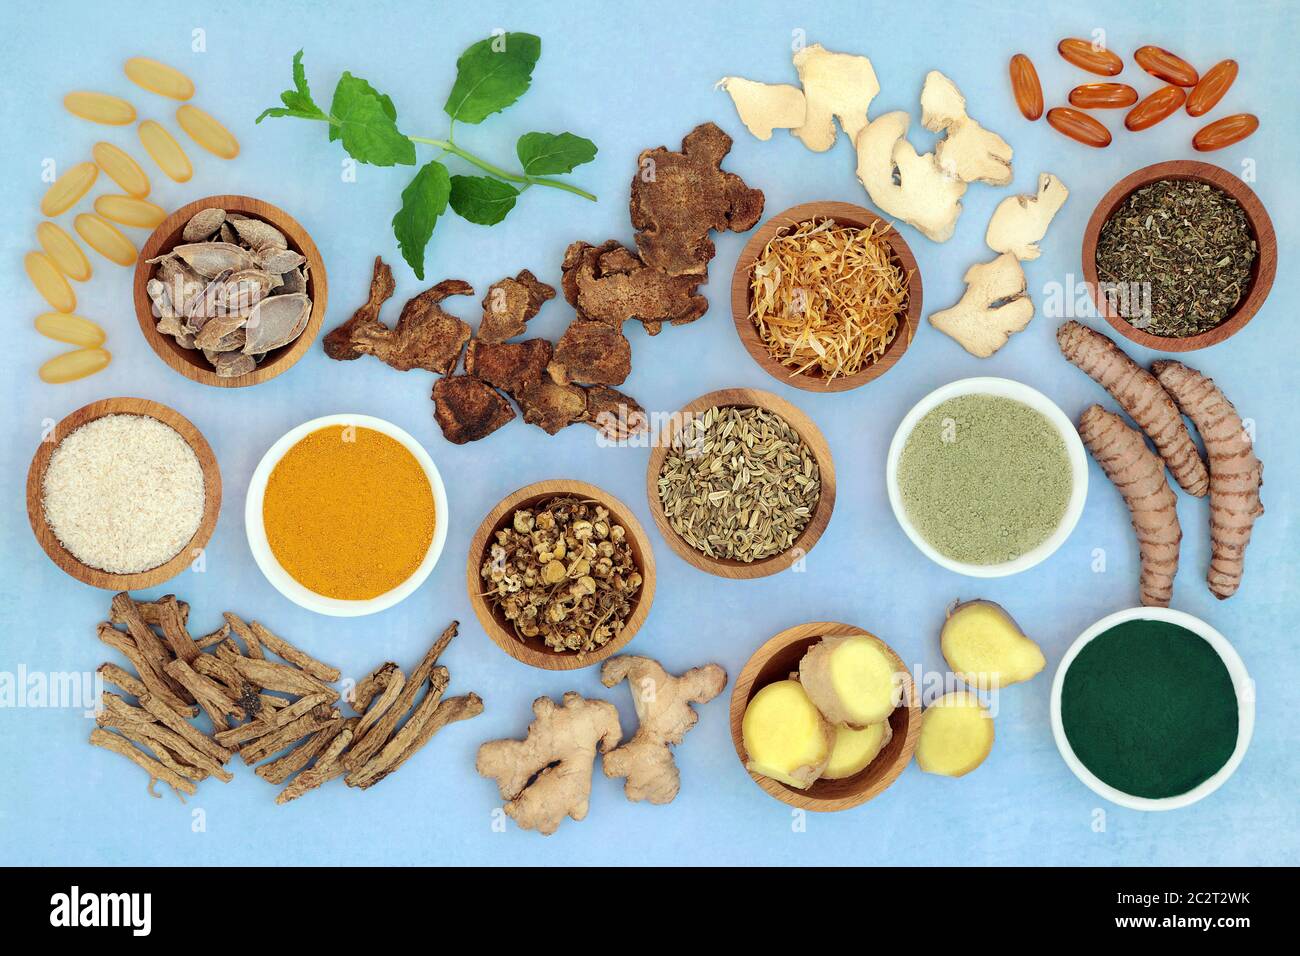 Herbes et épices utilisées en médecine chinoise pour traiter le syndrome du côlon irritable avec des poudres de supplément, des capsules d'onagre et d'huile de poisson. Banque D'Images